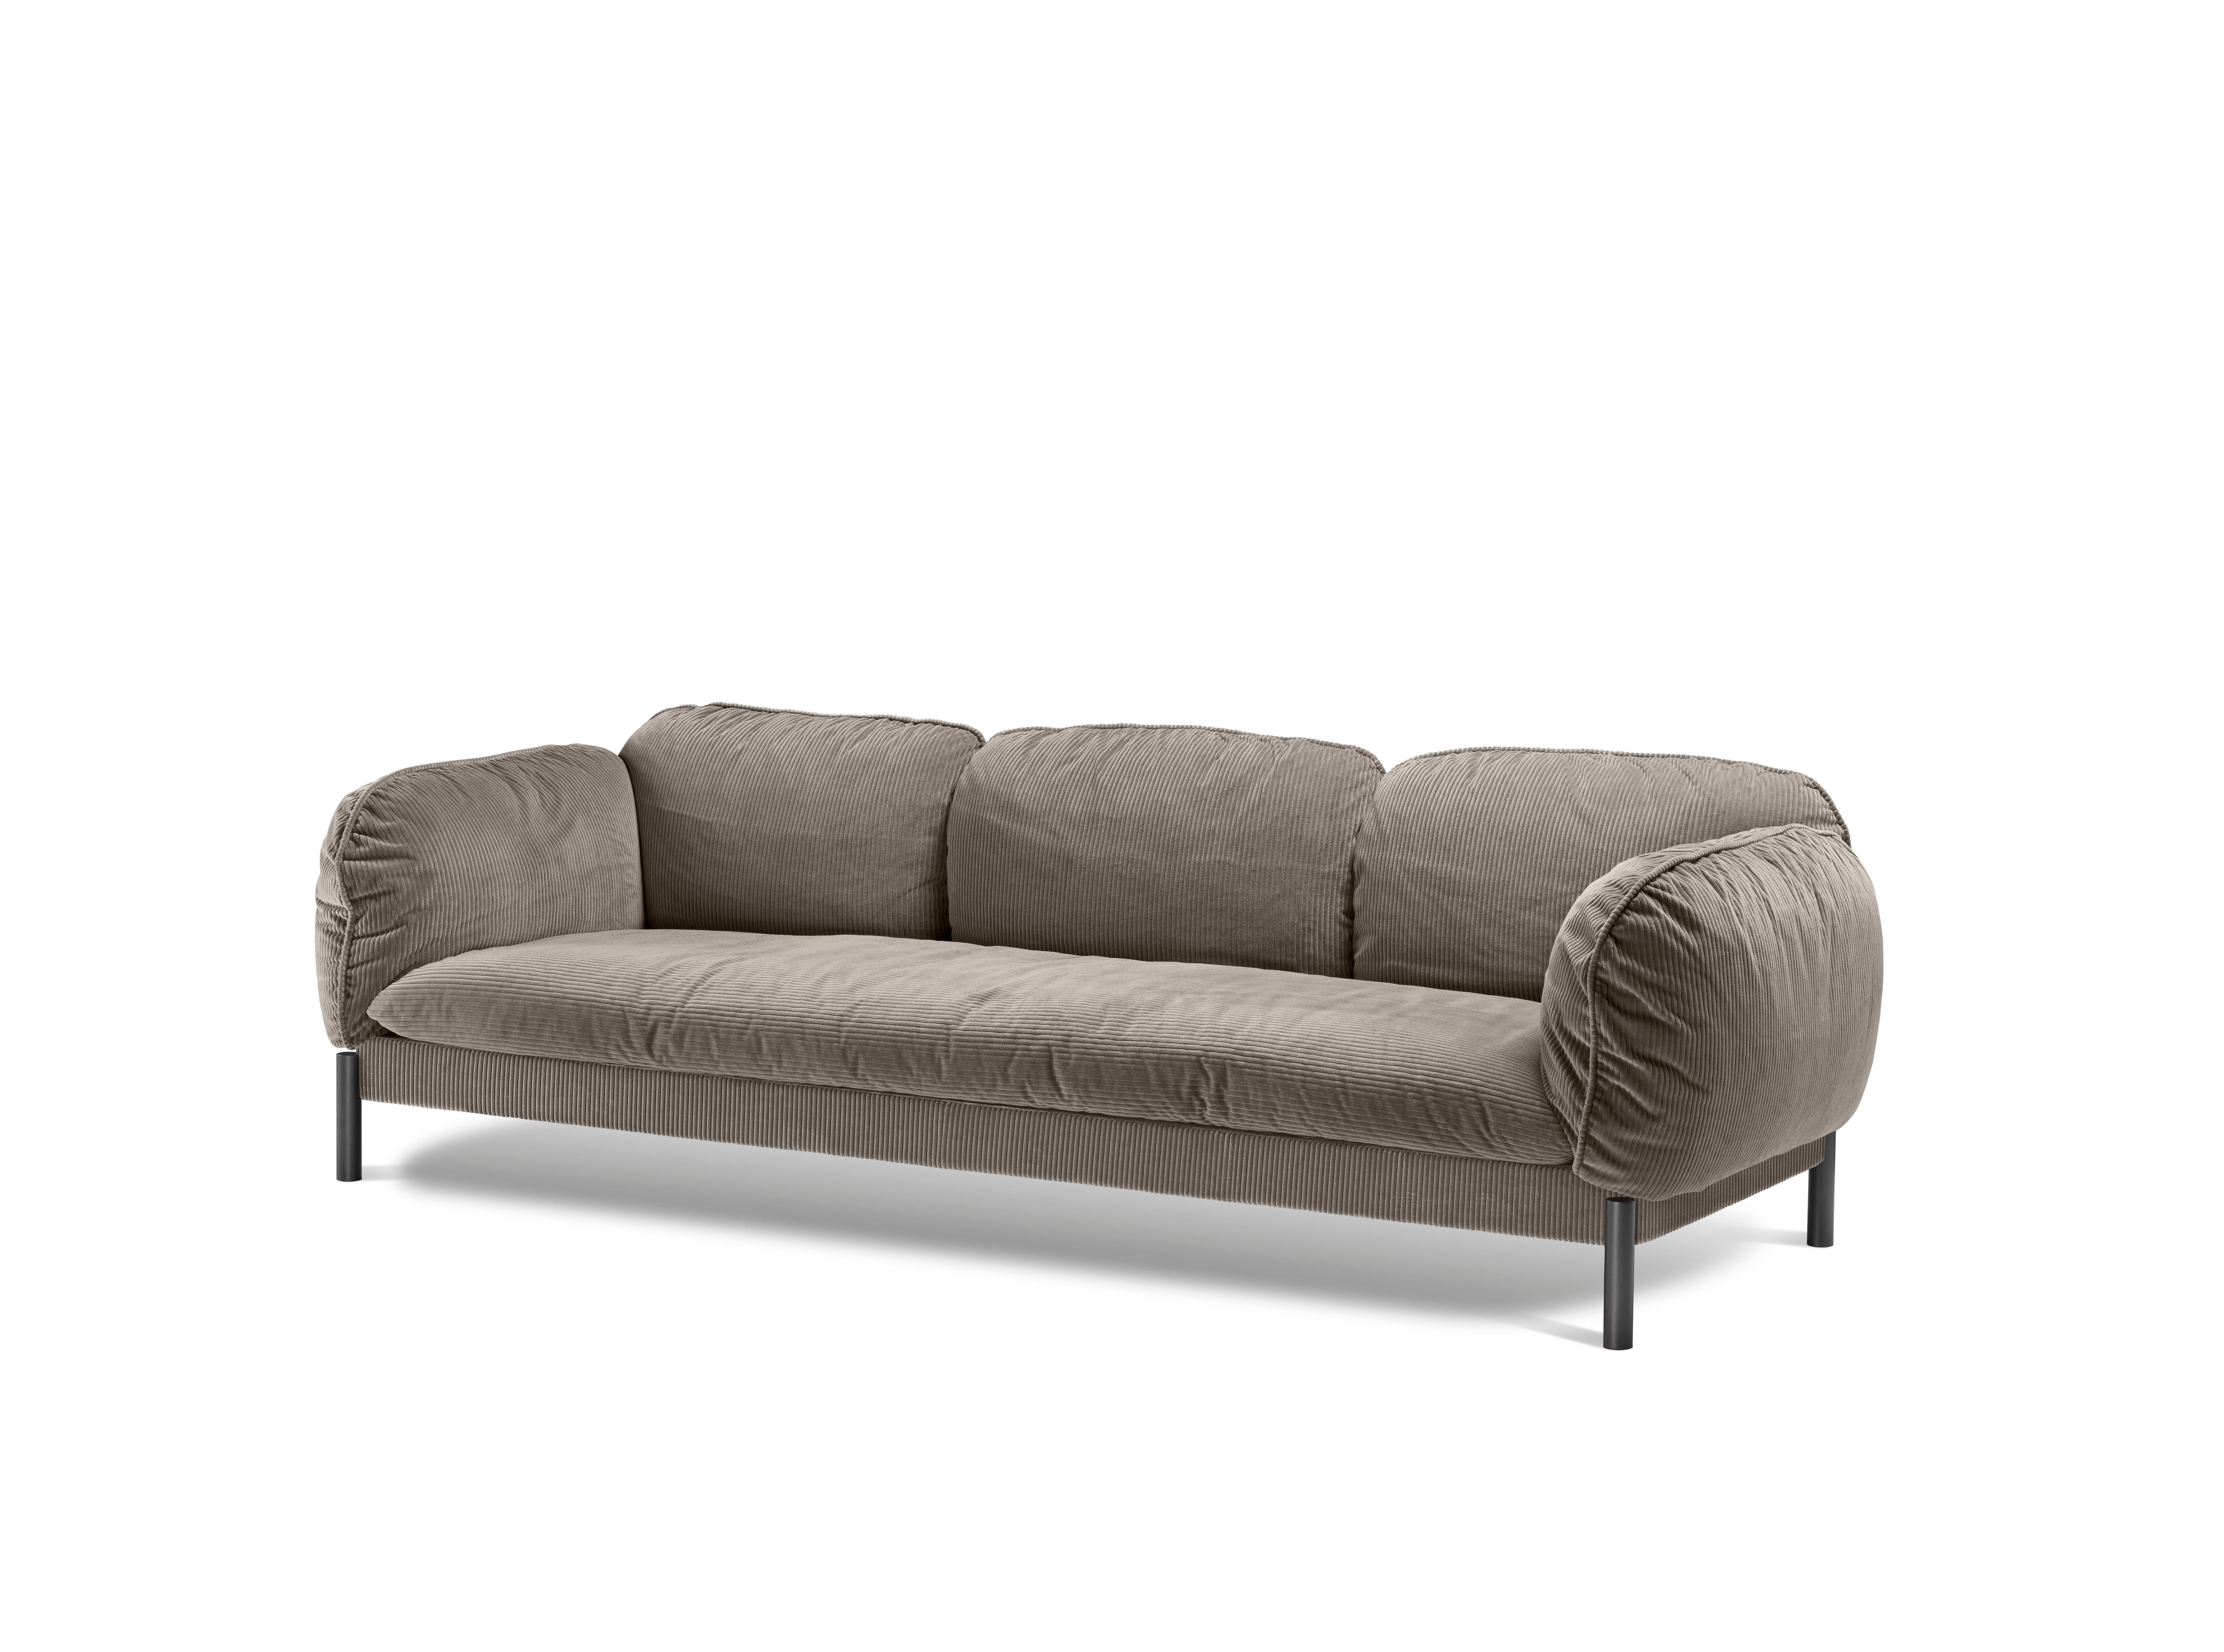 Dieses weiche und einladende Sofa ist von den 70er Jahren inspiriert, einem Jahrzehnt, das unsere Kultur durch Freiheit und Selbstentdeckung für immer verändert hat. Das Sofa lädt Sie in eine Fantasiewelt ein, in der Sie in Komfort und Gemütlichkeit